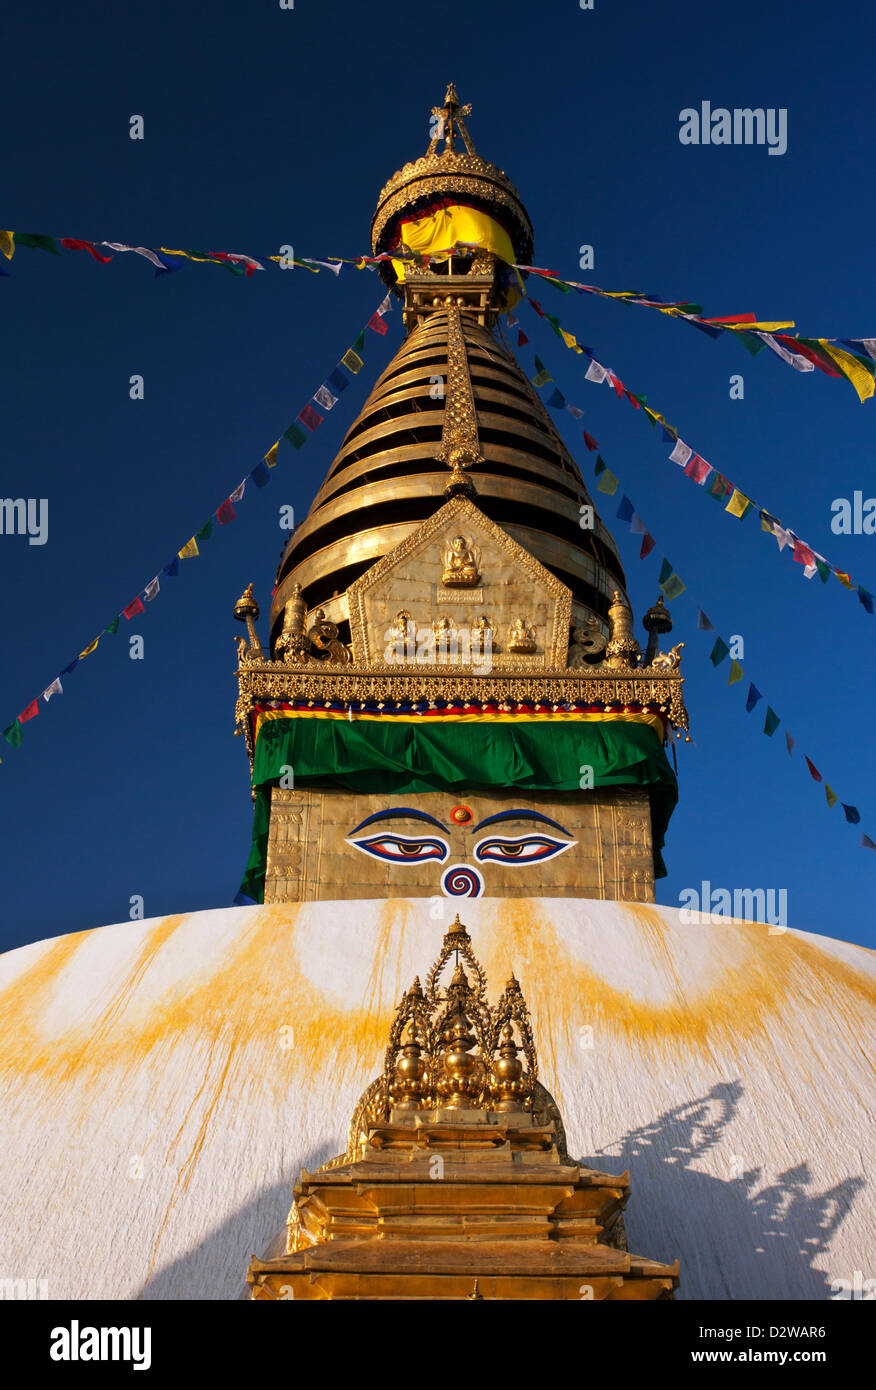 Swayambhunath Buddhist Stupa known also as the Monkey Temple in Kathmandu, Nepal. Stock Photo